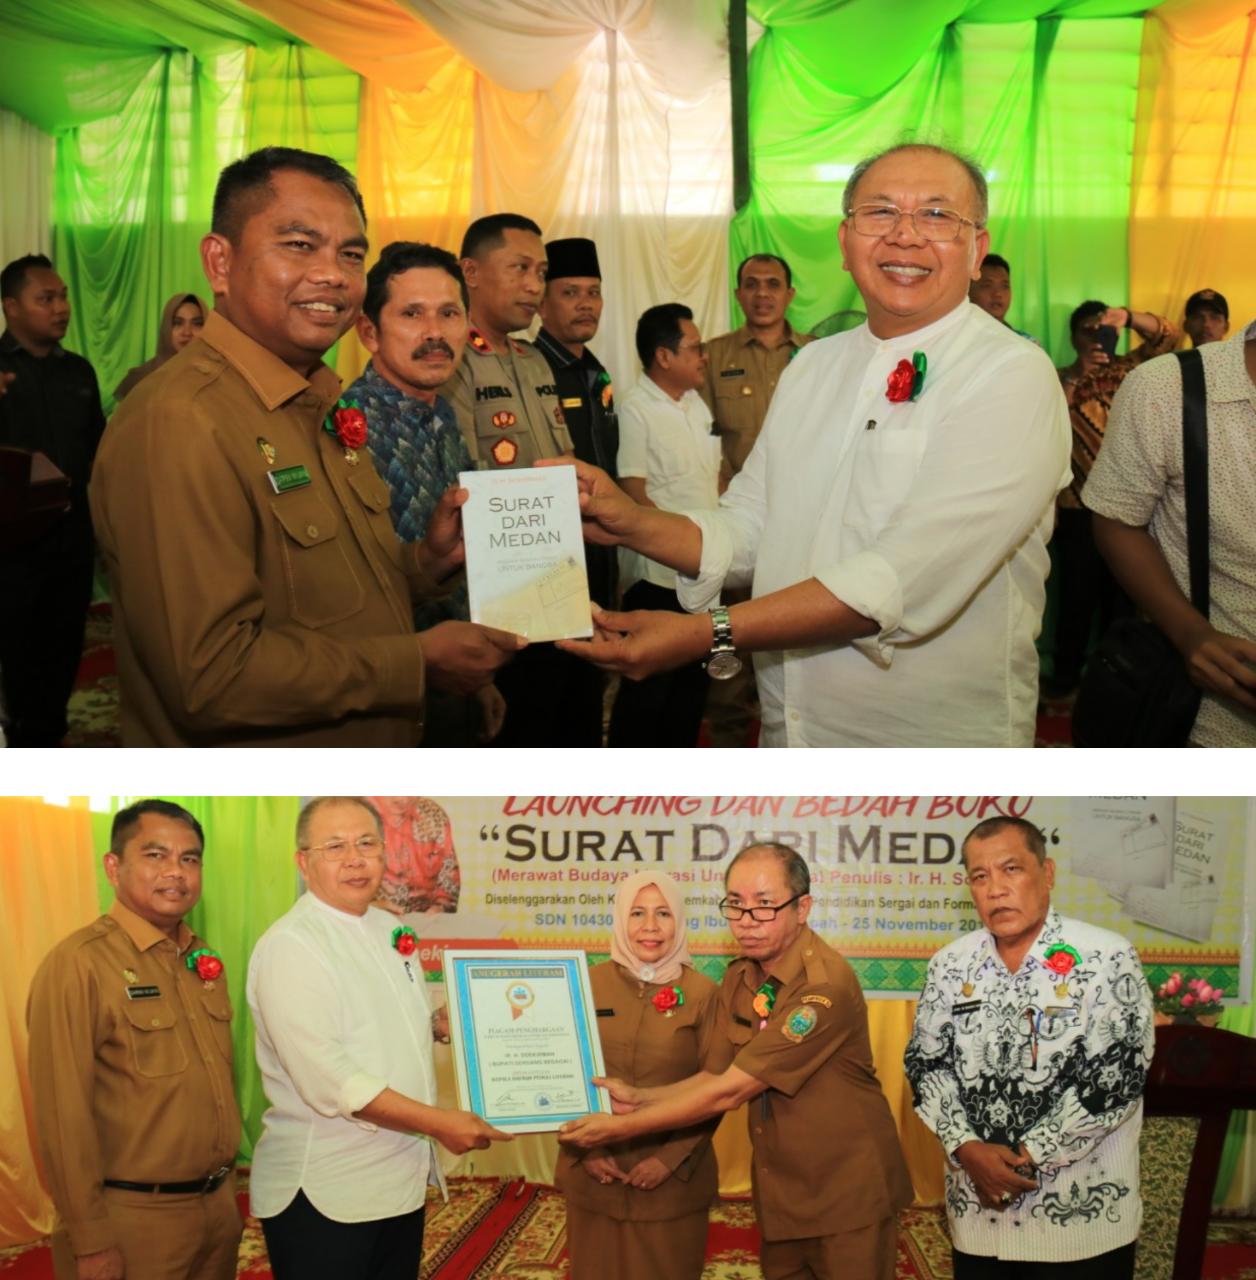 Bupati Soekirman Launching dan Bedah Buku Berjudul Surat dari Medan